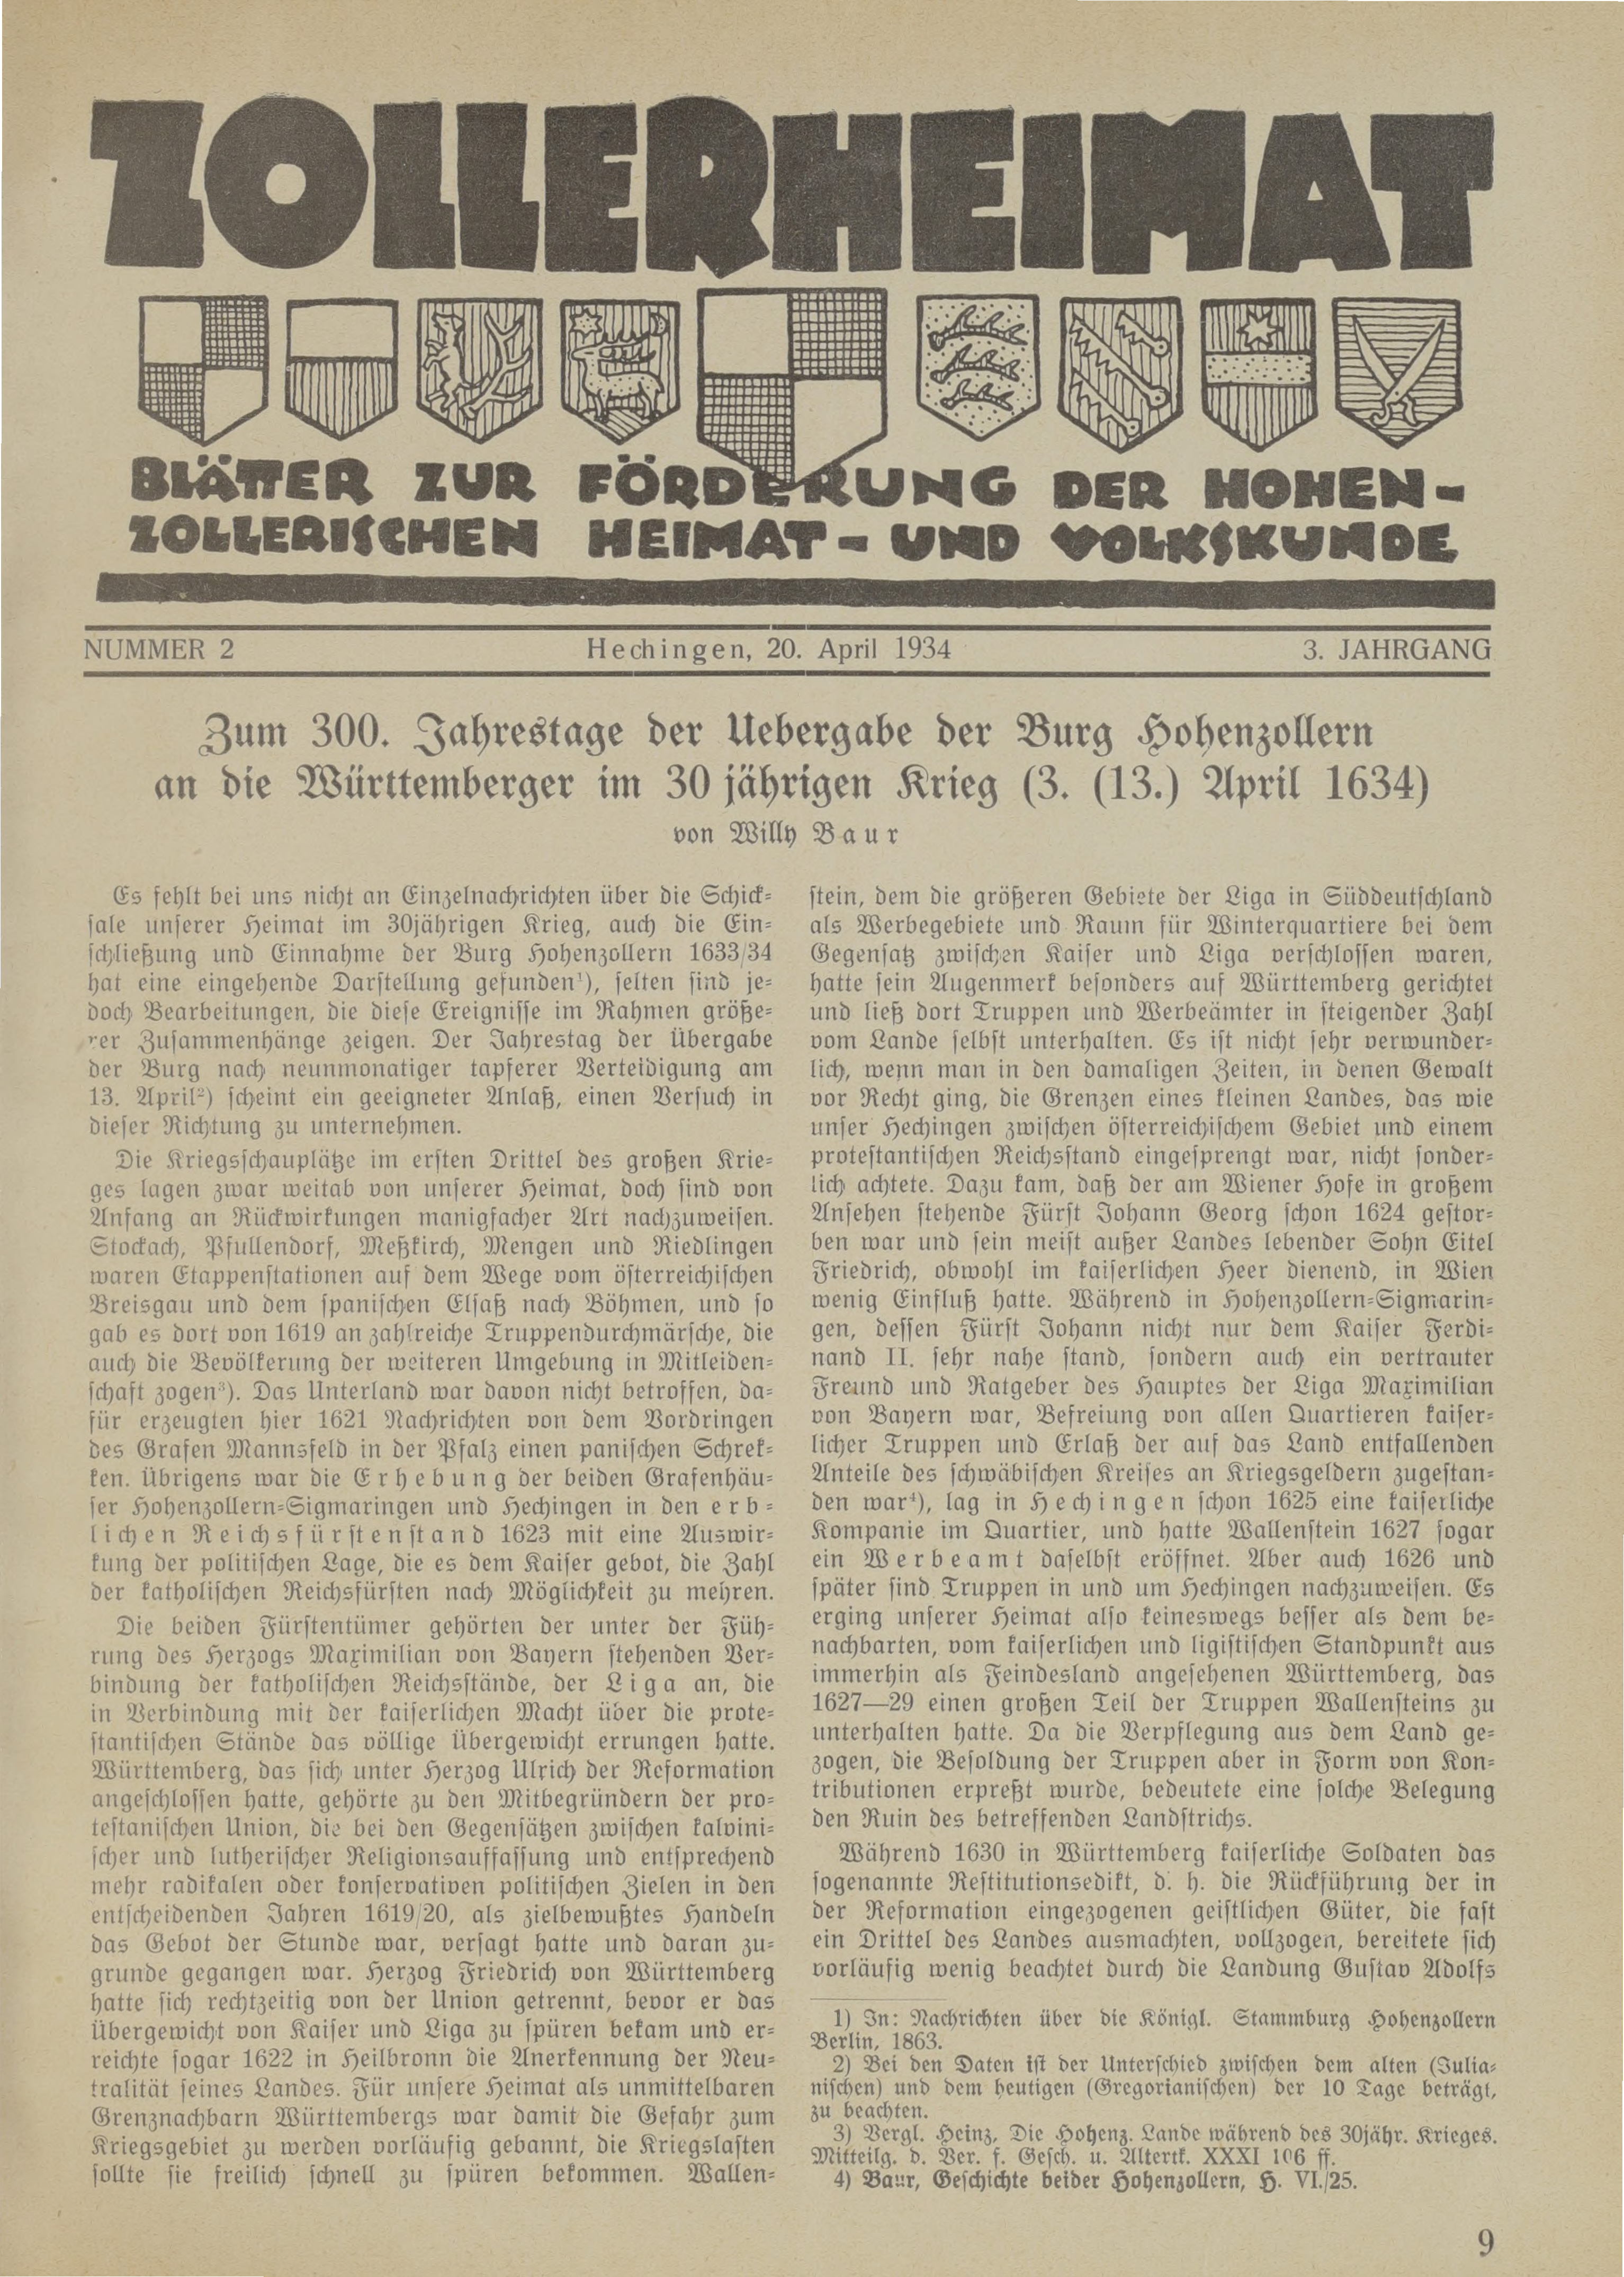                     Ansehen Bd. 3 Nr. 2 (1934): Zollerheimat
                